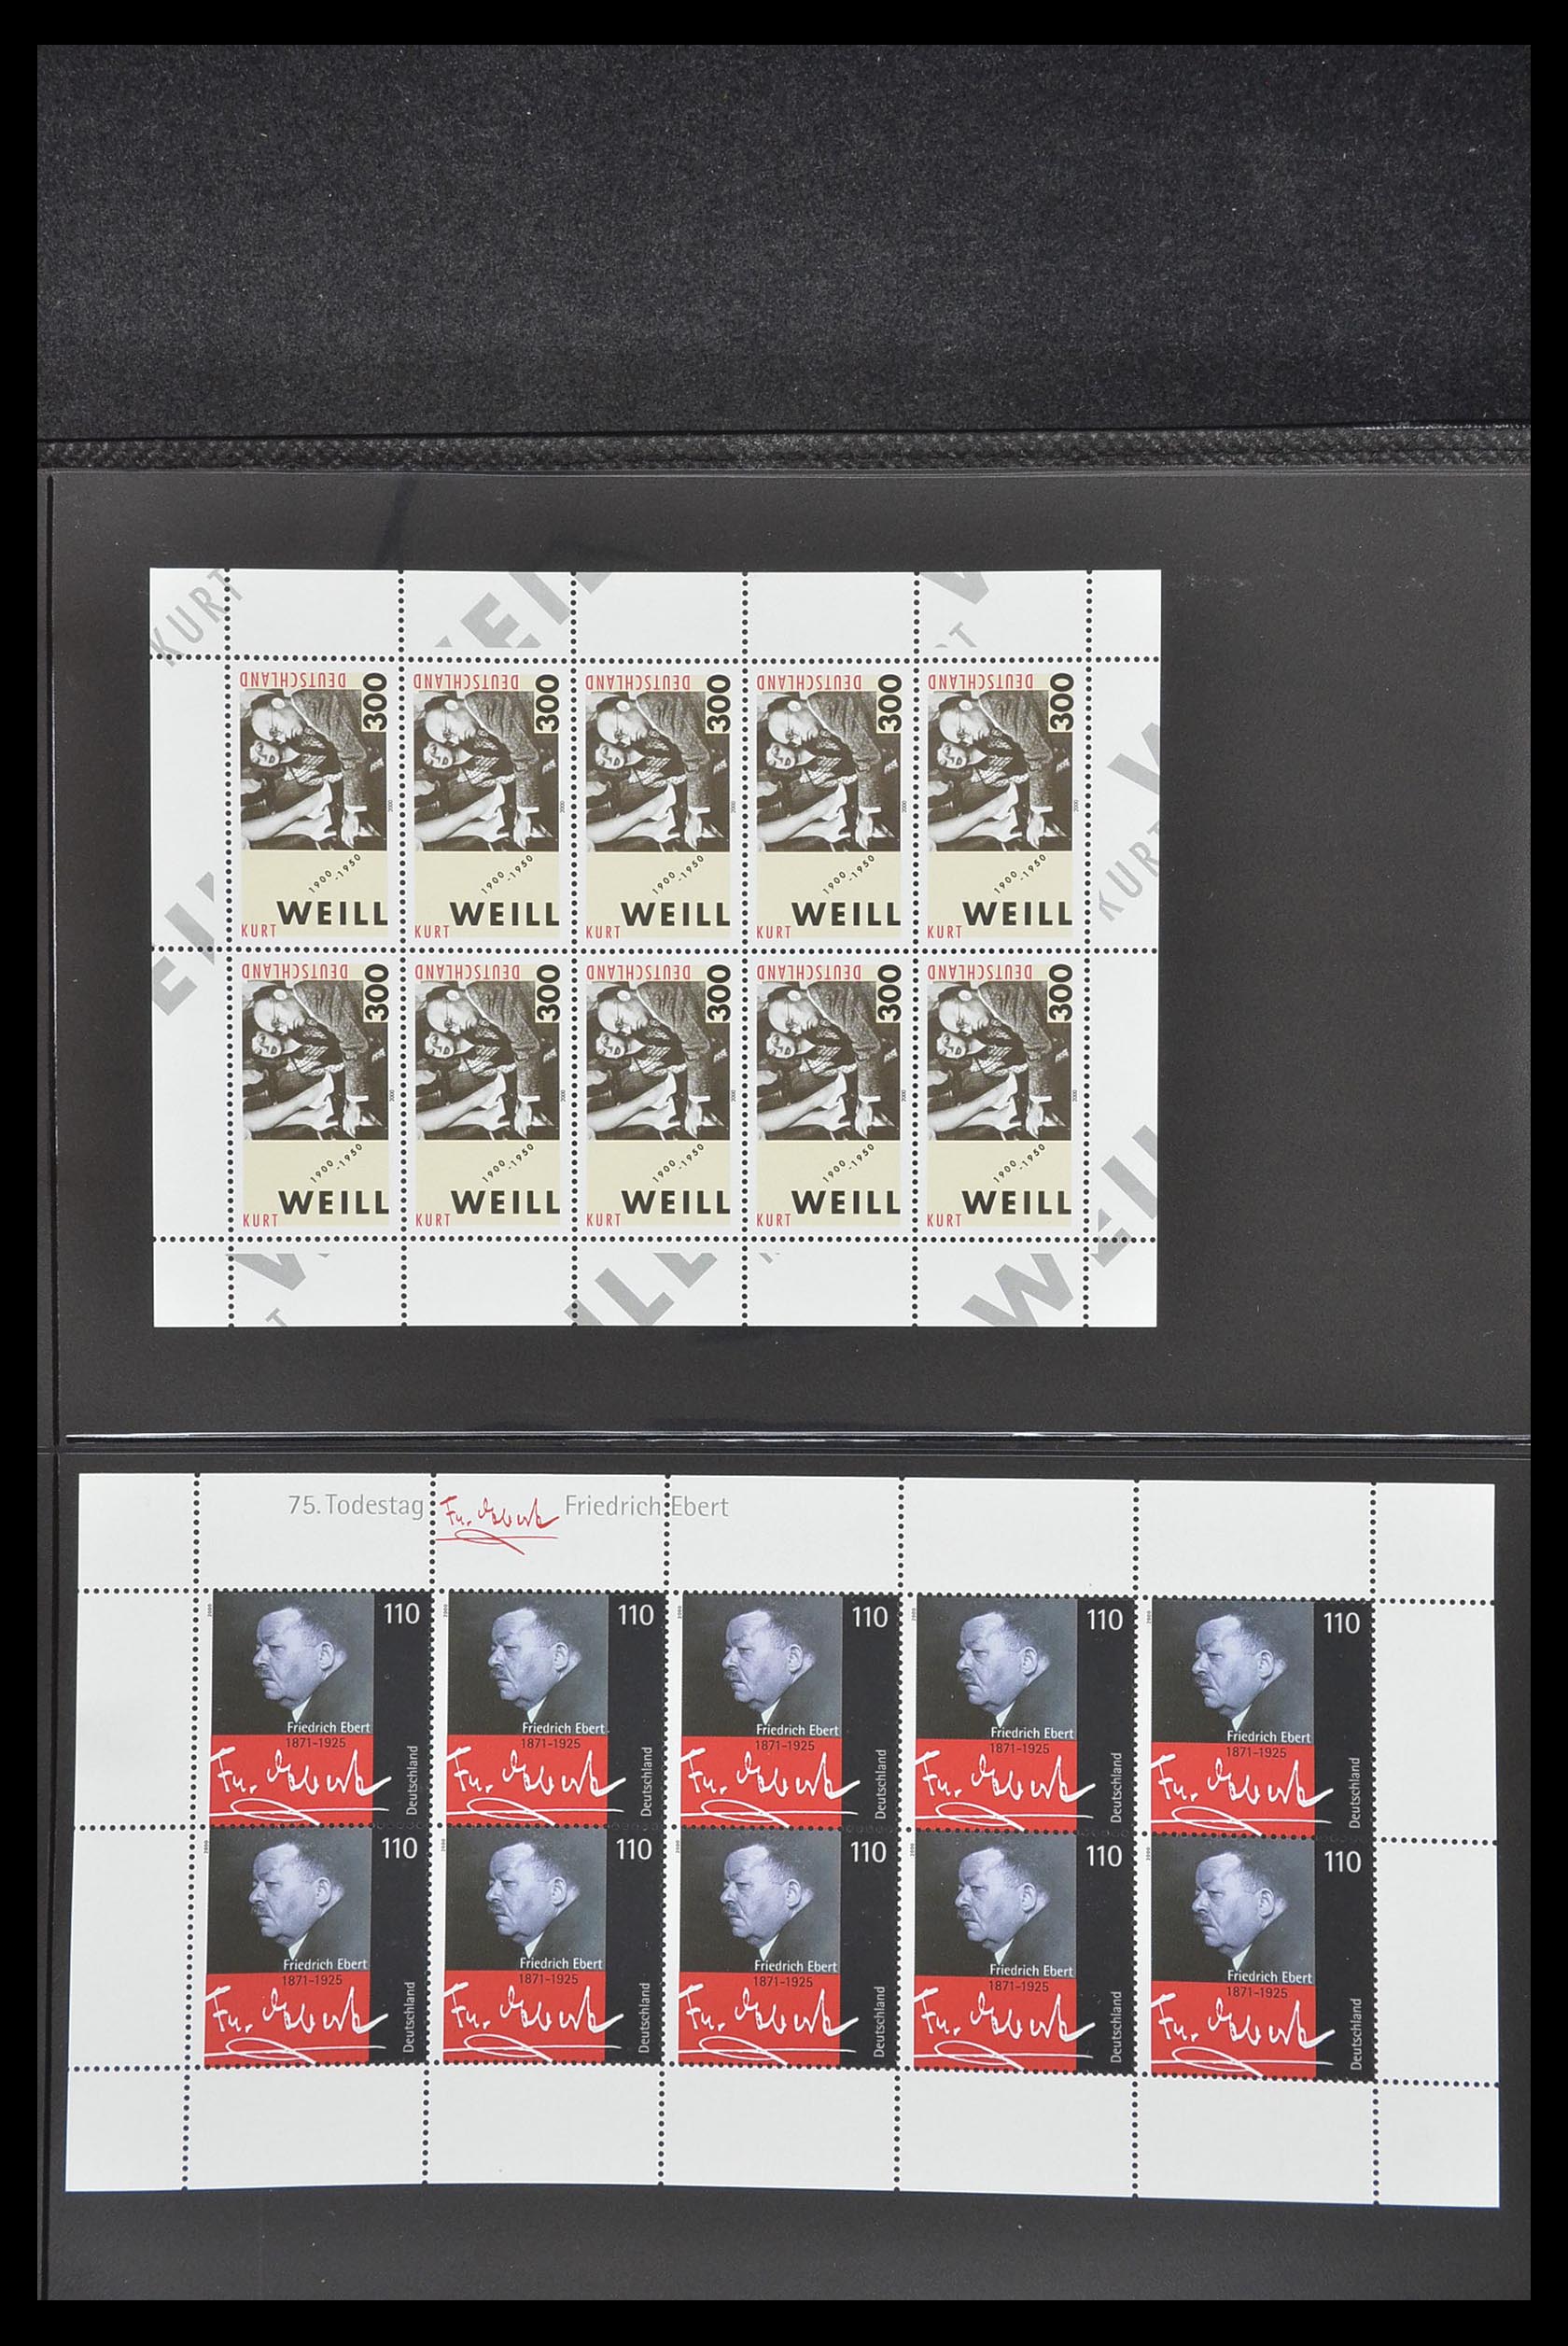 33936 152 - Stamp collection 33936 Bundespost kleinbogen 1994-2000.